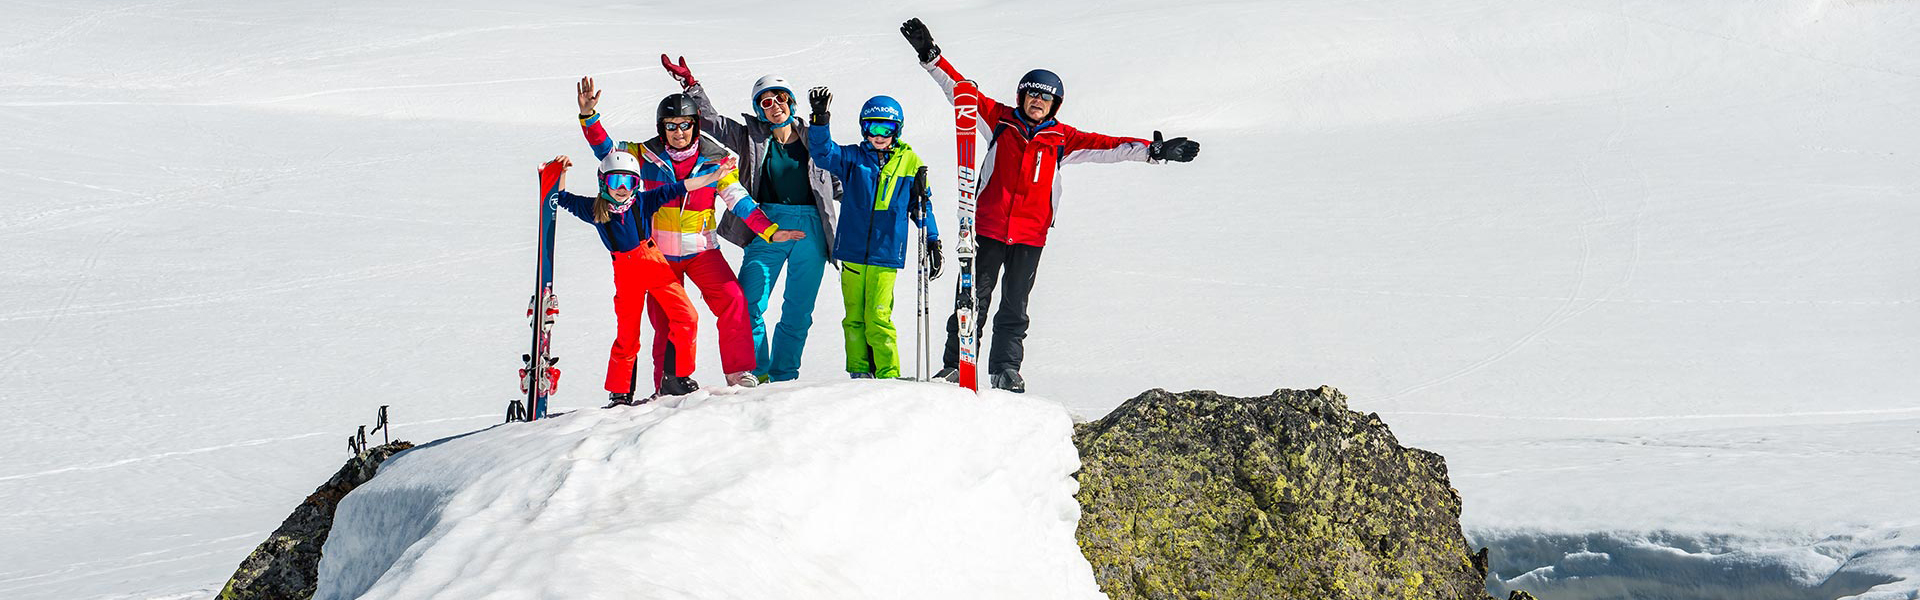 Chamrousse vacances famille ski activité glisse neige famille station montagne hiver grenoble lyon isère alpes france - © Images-et-reves.fr